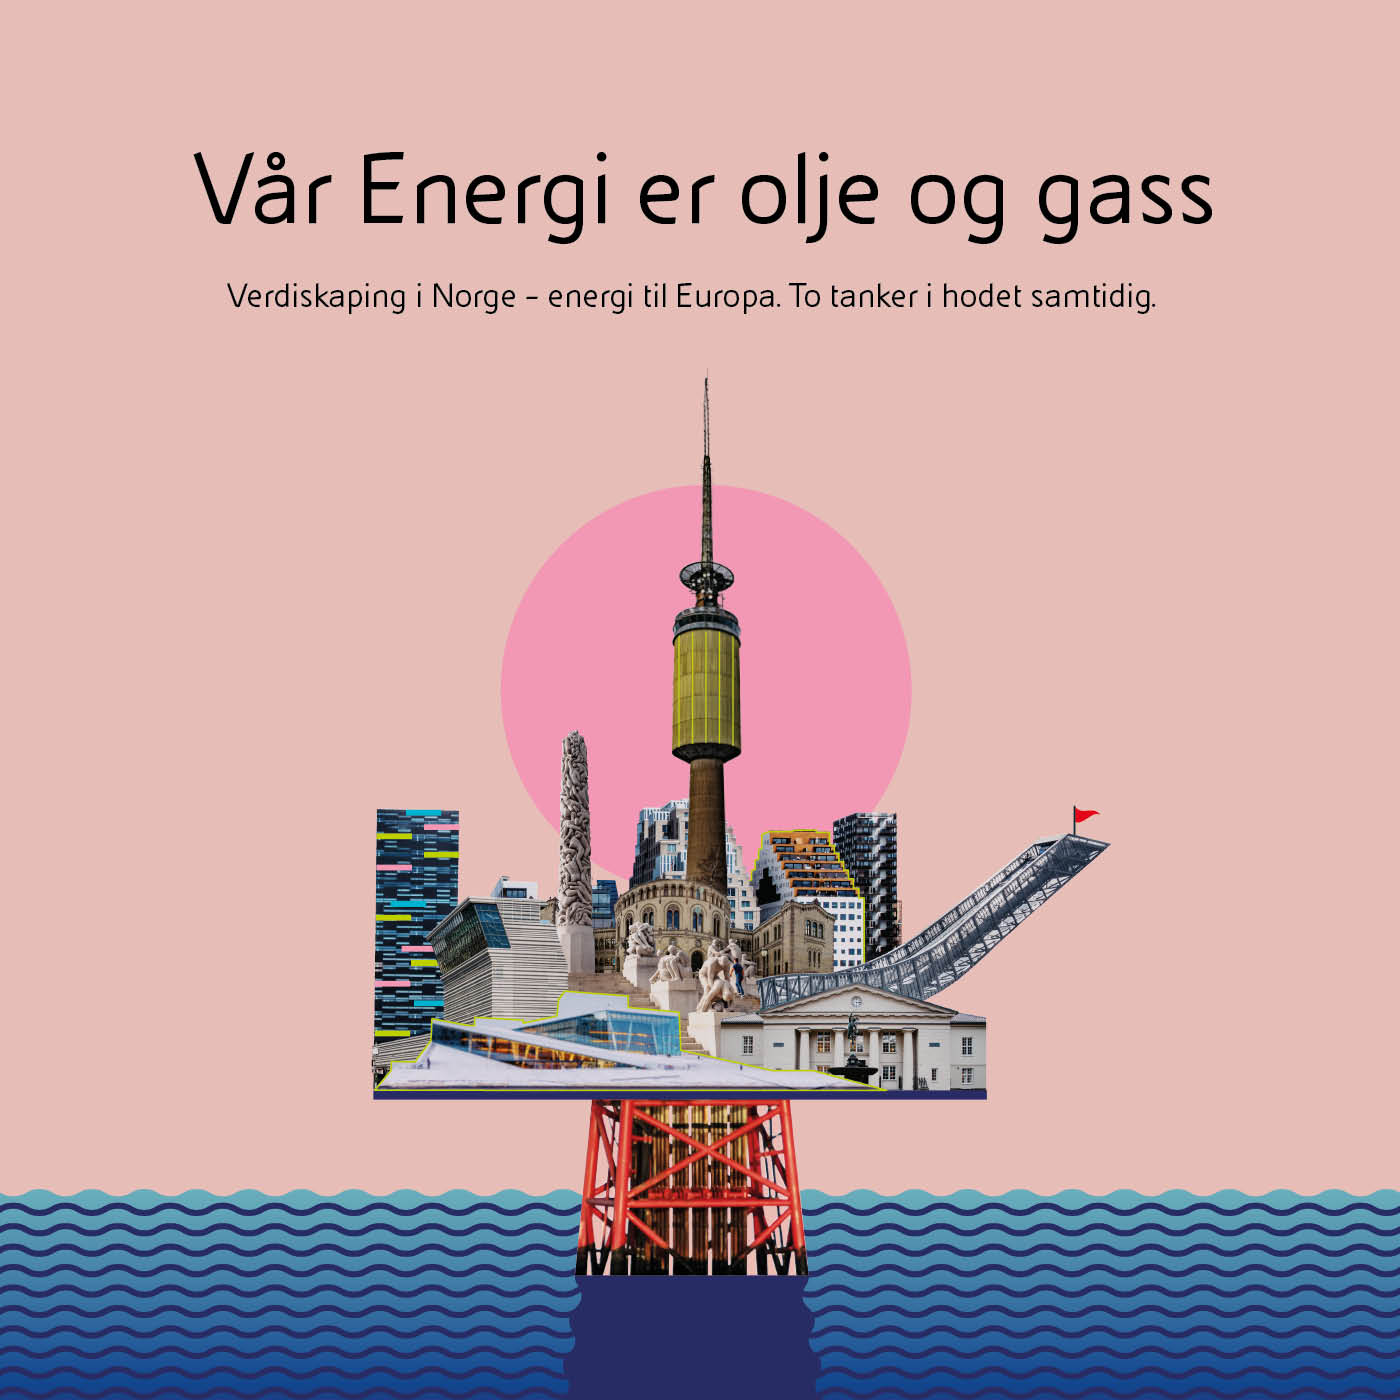 Plakat som viser norske signalbygg og landemerker satt sammen som en oljeplattform for å tydeliggjøre at Vår Energi er et olje- og gasselskap